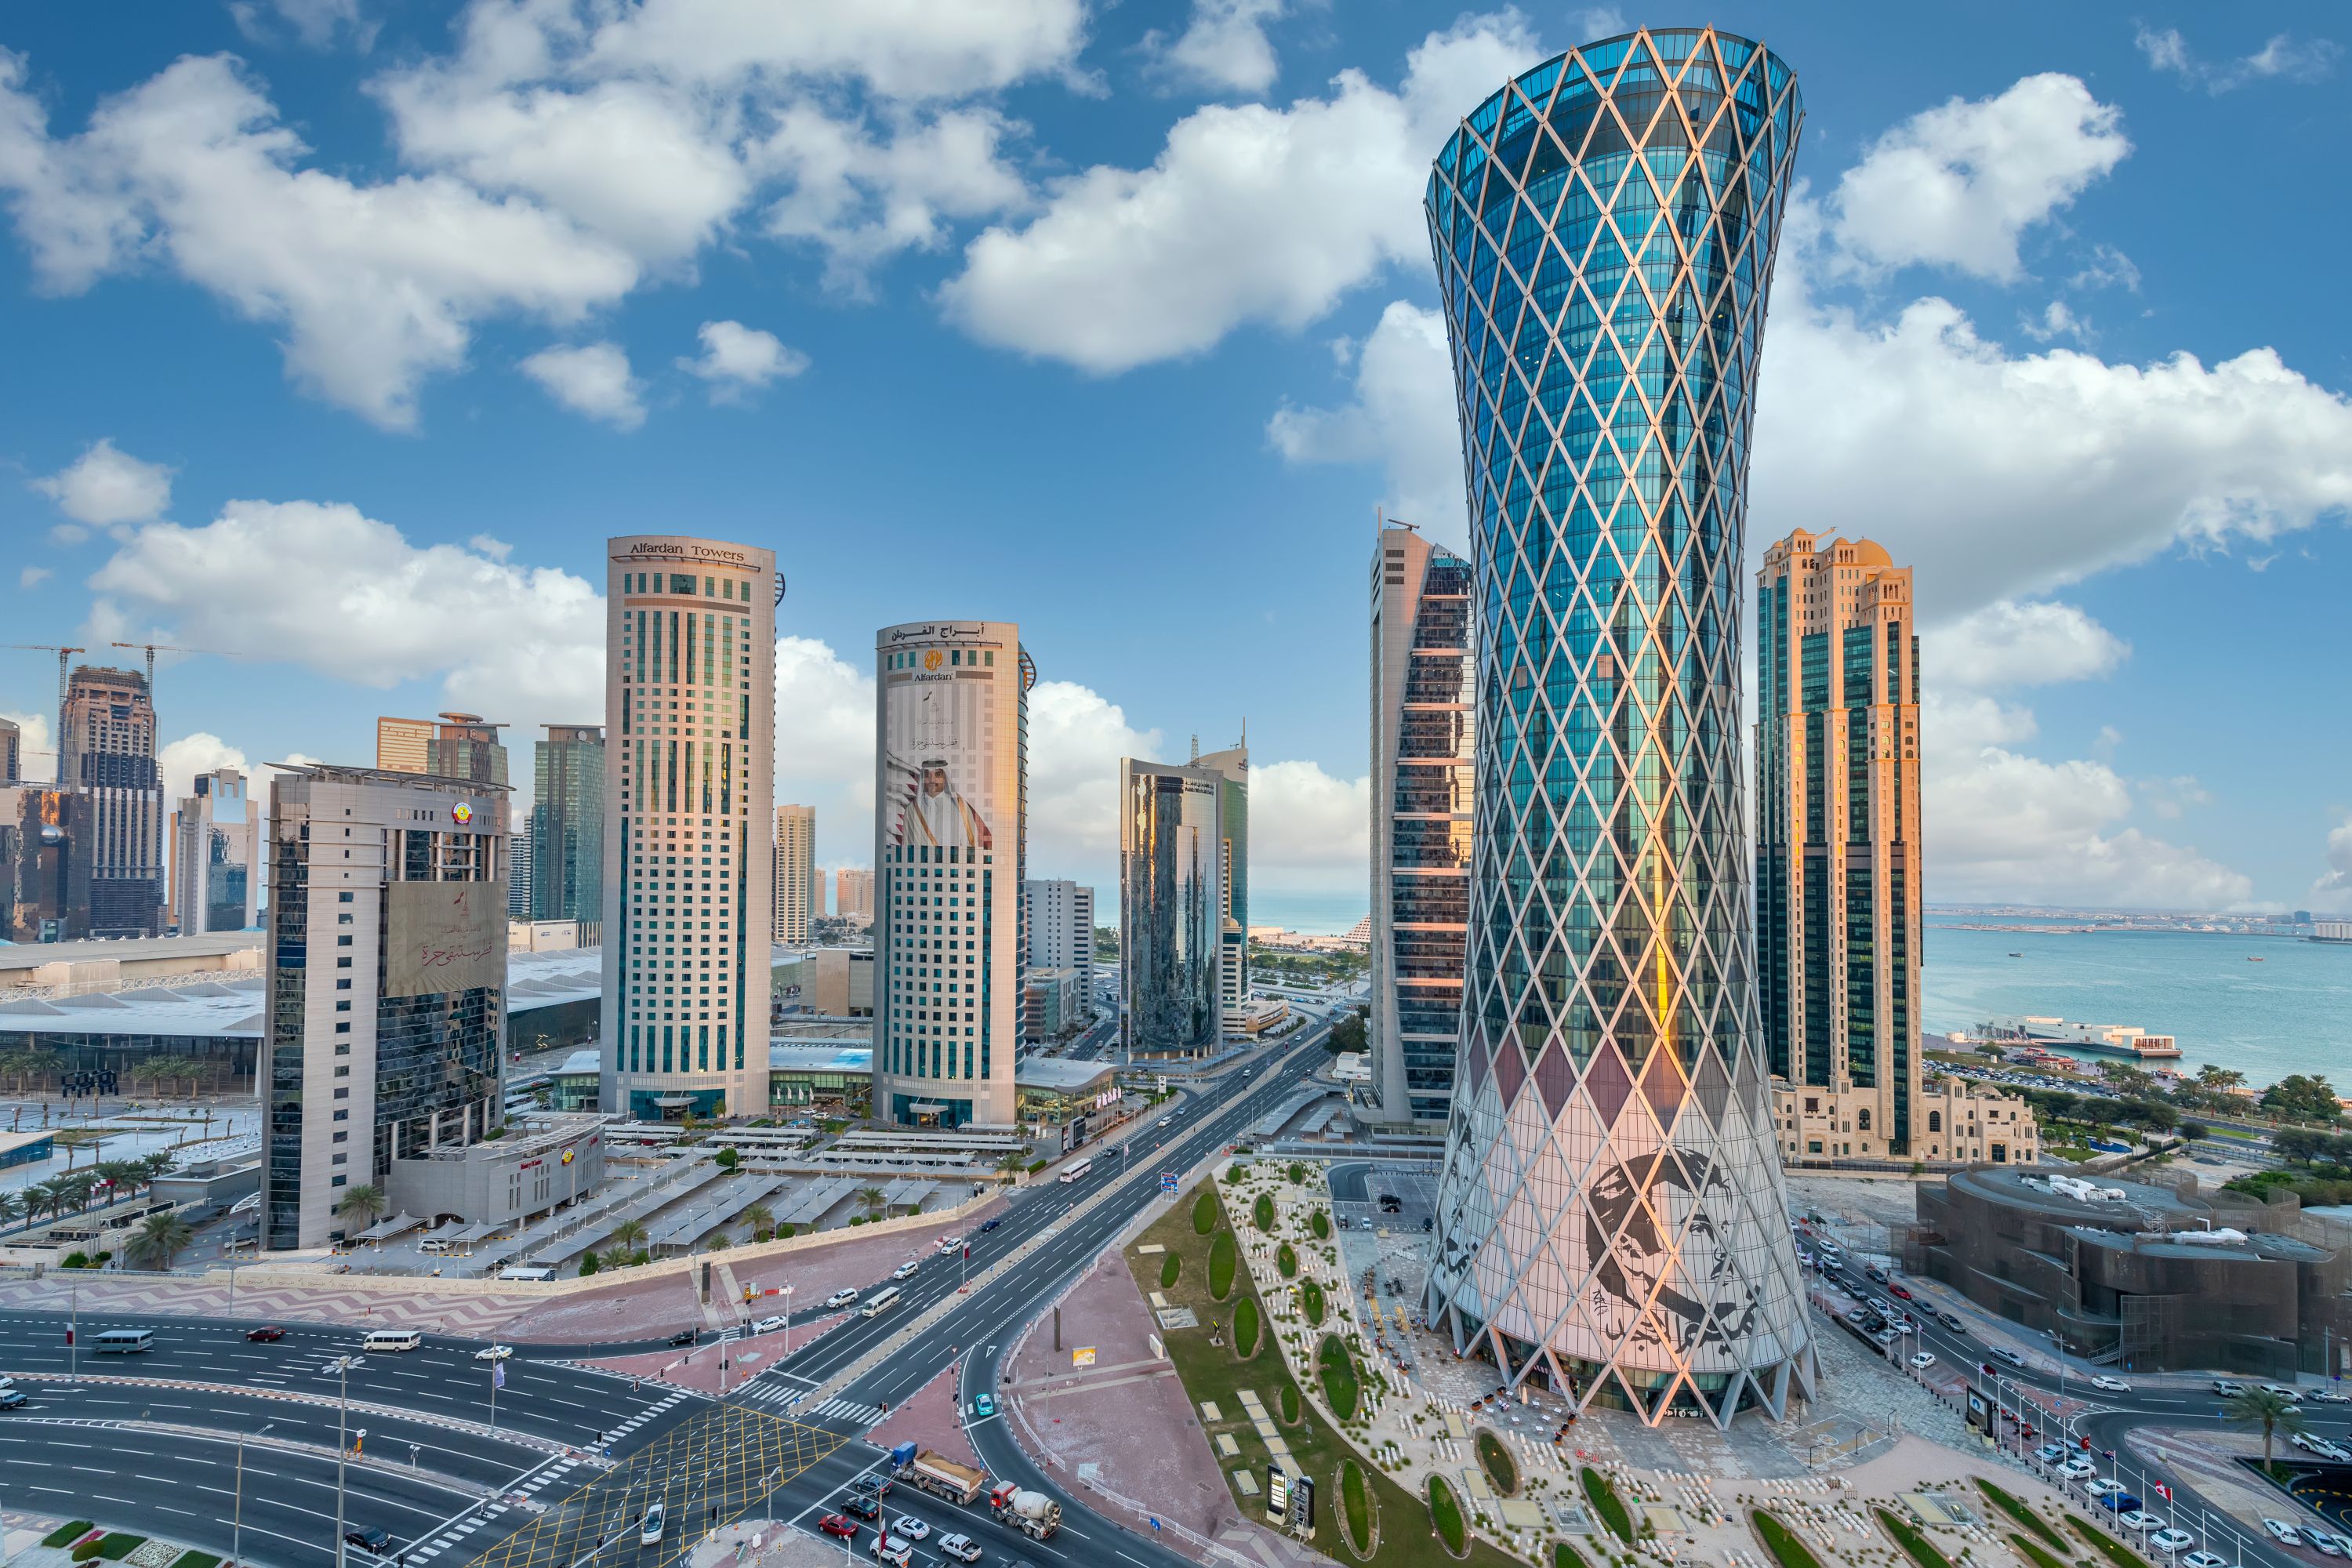 تعد قطر إحدى الدول الخليجية في جنوب غرب قارّة آسيا، حيث تتمركز في شبه الجزيرة العربية وتطل على ساحل الخليج العربي